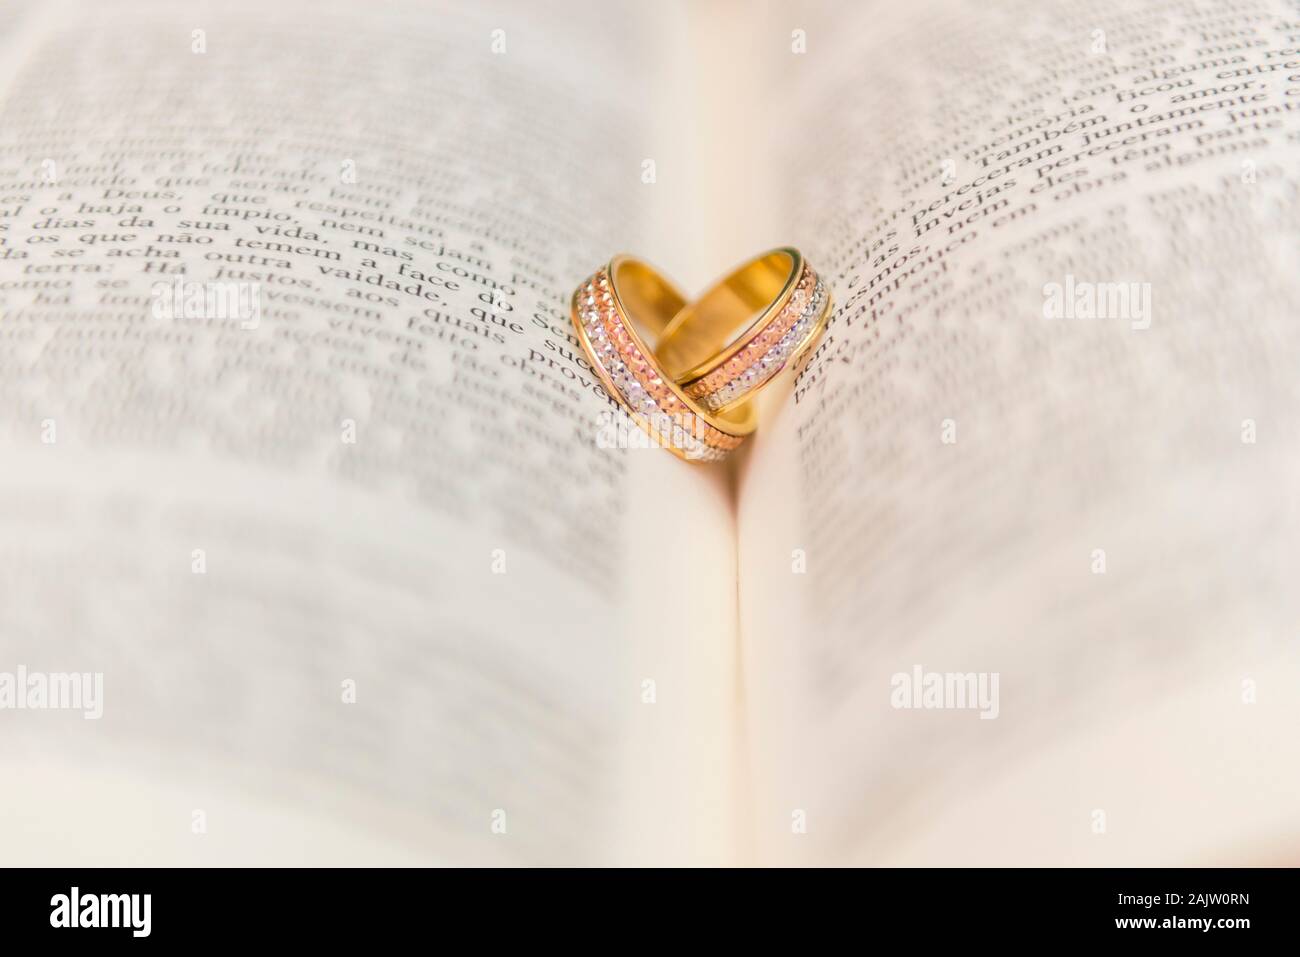 Hochzeit Ringe auf einem offenen Bibel" Bíblia Sagrada". Konzept der Union, Liebe, Freundschaft, Treue. Religiöse union. Selektive konzentrieren. Stockfoto